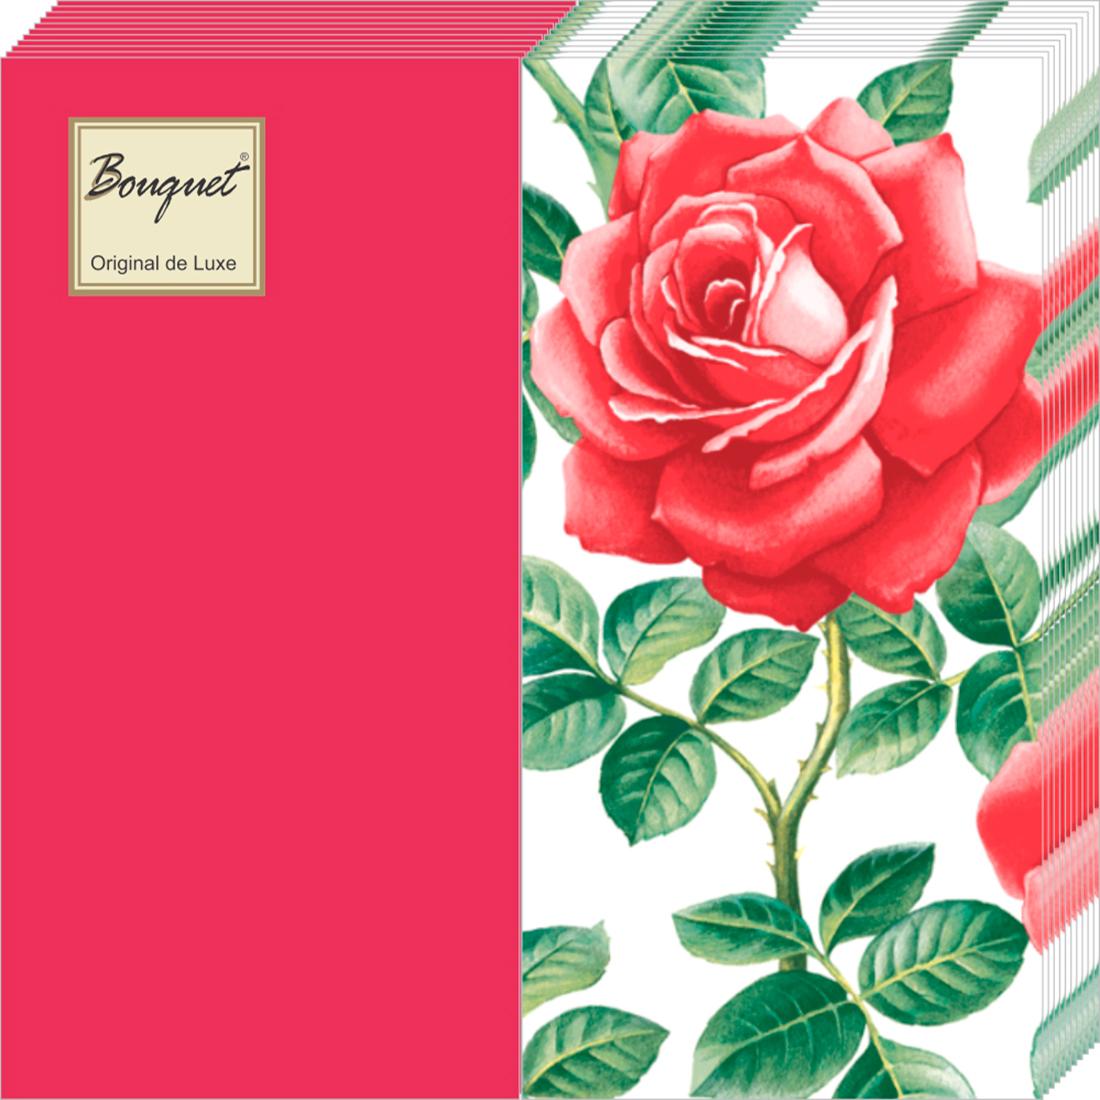 Салфетки Bouquet de luxe бумажные английская роза mix красные 2сл 20л салфетки bouquet de luxe бумажные белые тюльпаны 24х24 3сл 25л